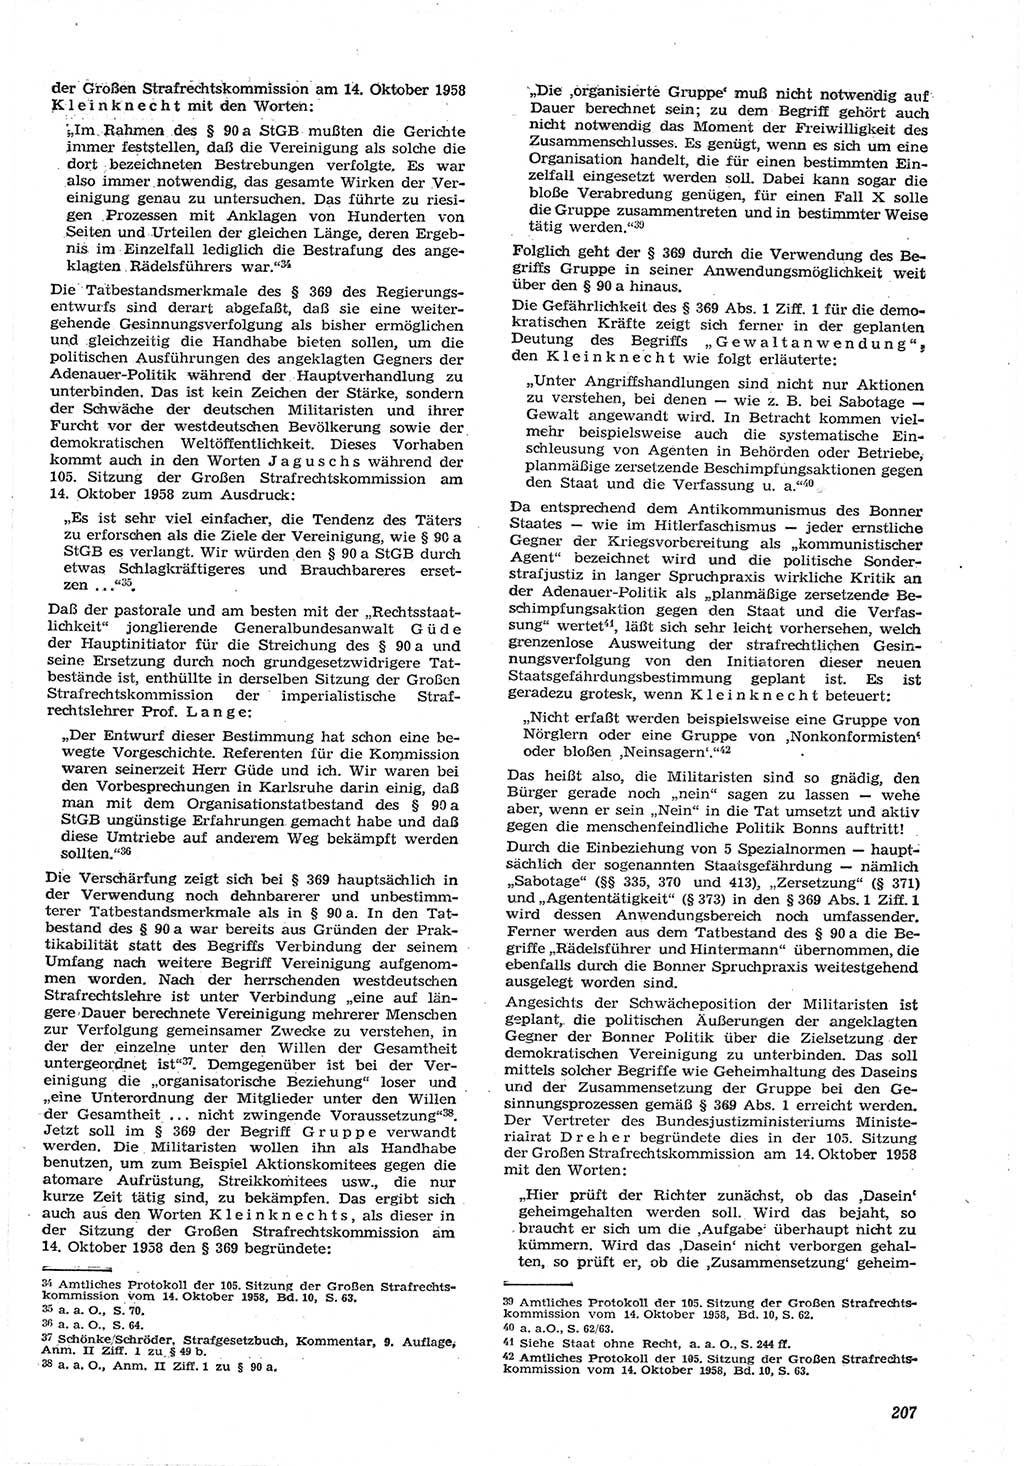 Neue Justiz (NJ), Zeitschrift für Recht und Rechtswissenschaft [Deutsche Demokratische Republik (DDR)], 15. Jahrgang 1961, Seite 207 (NJ DDR 1961, S. 207)